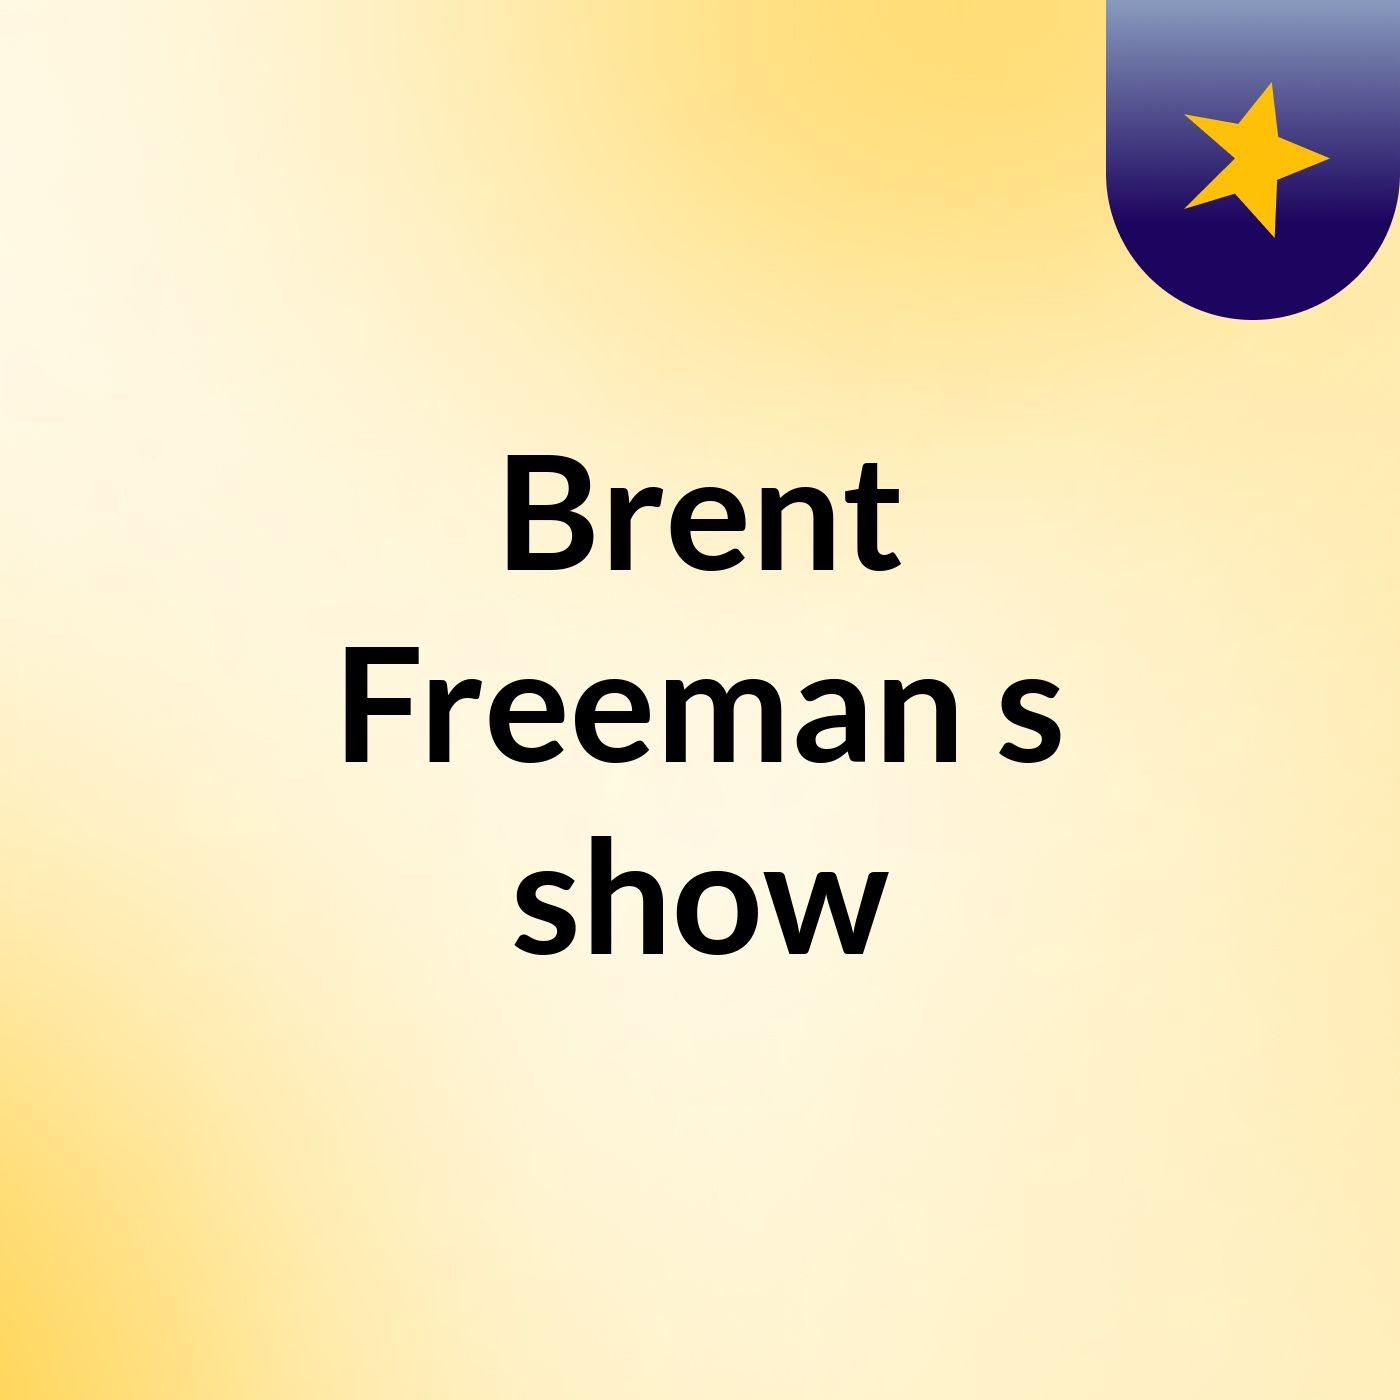 Episode 2 - Brent Freeman's show